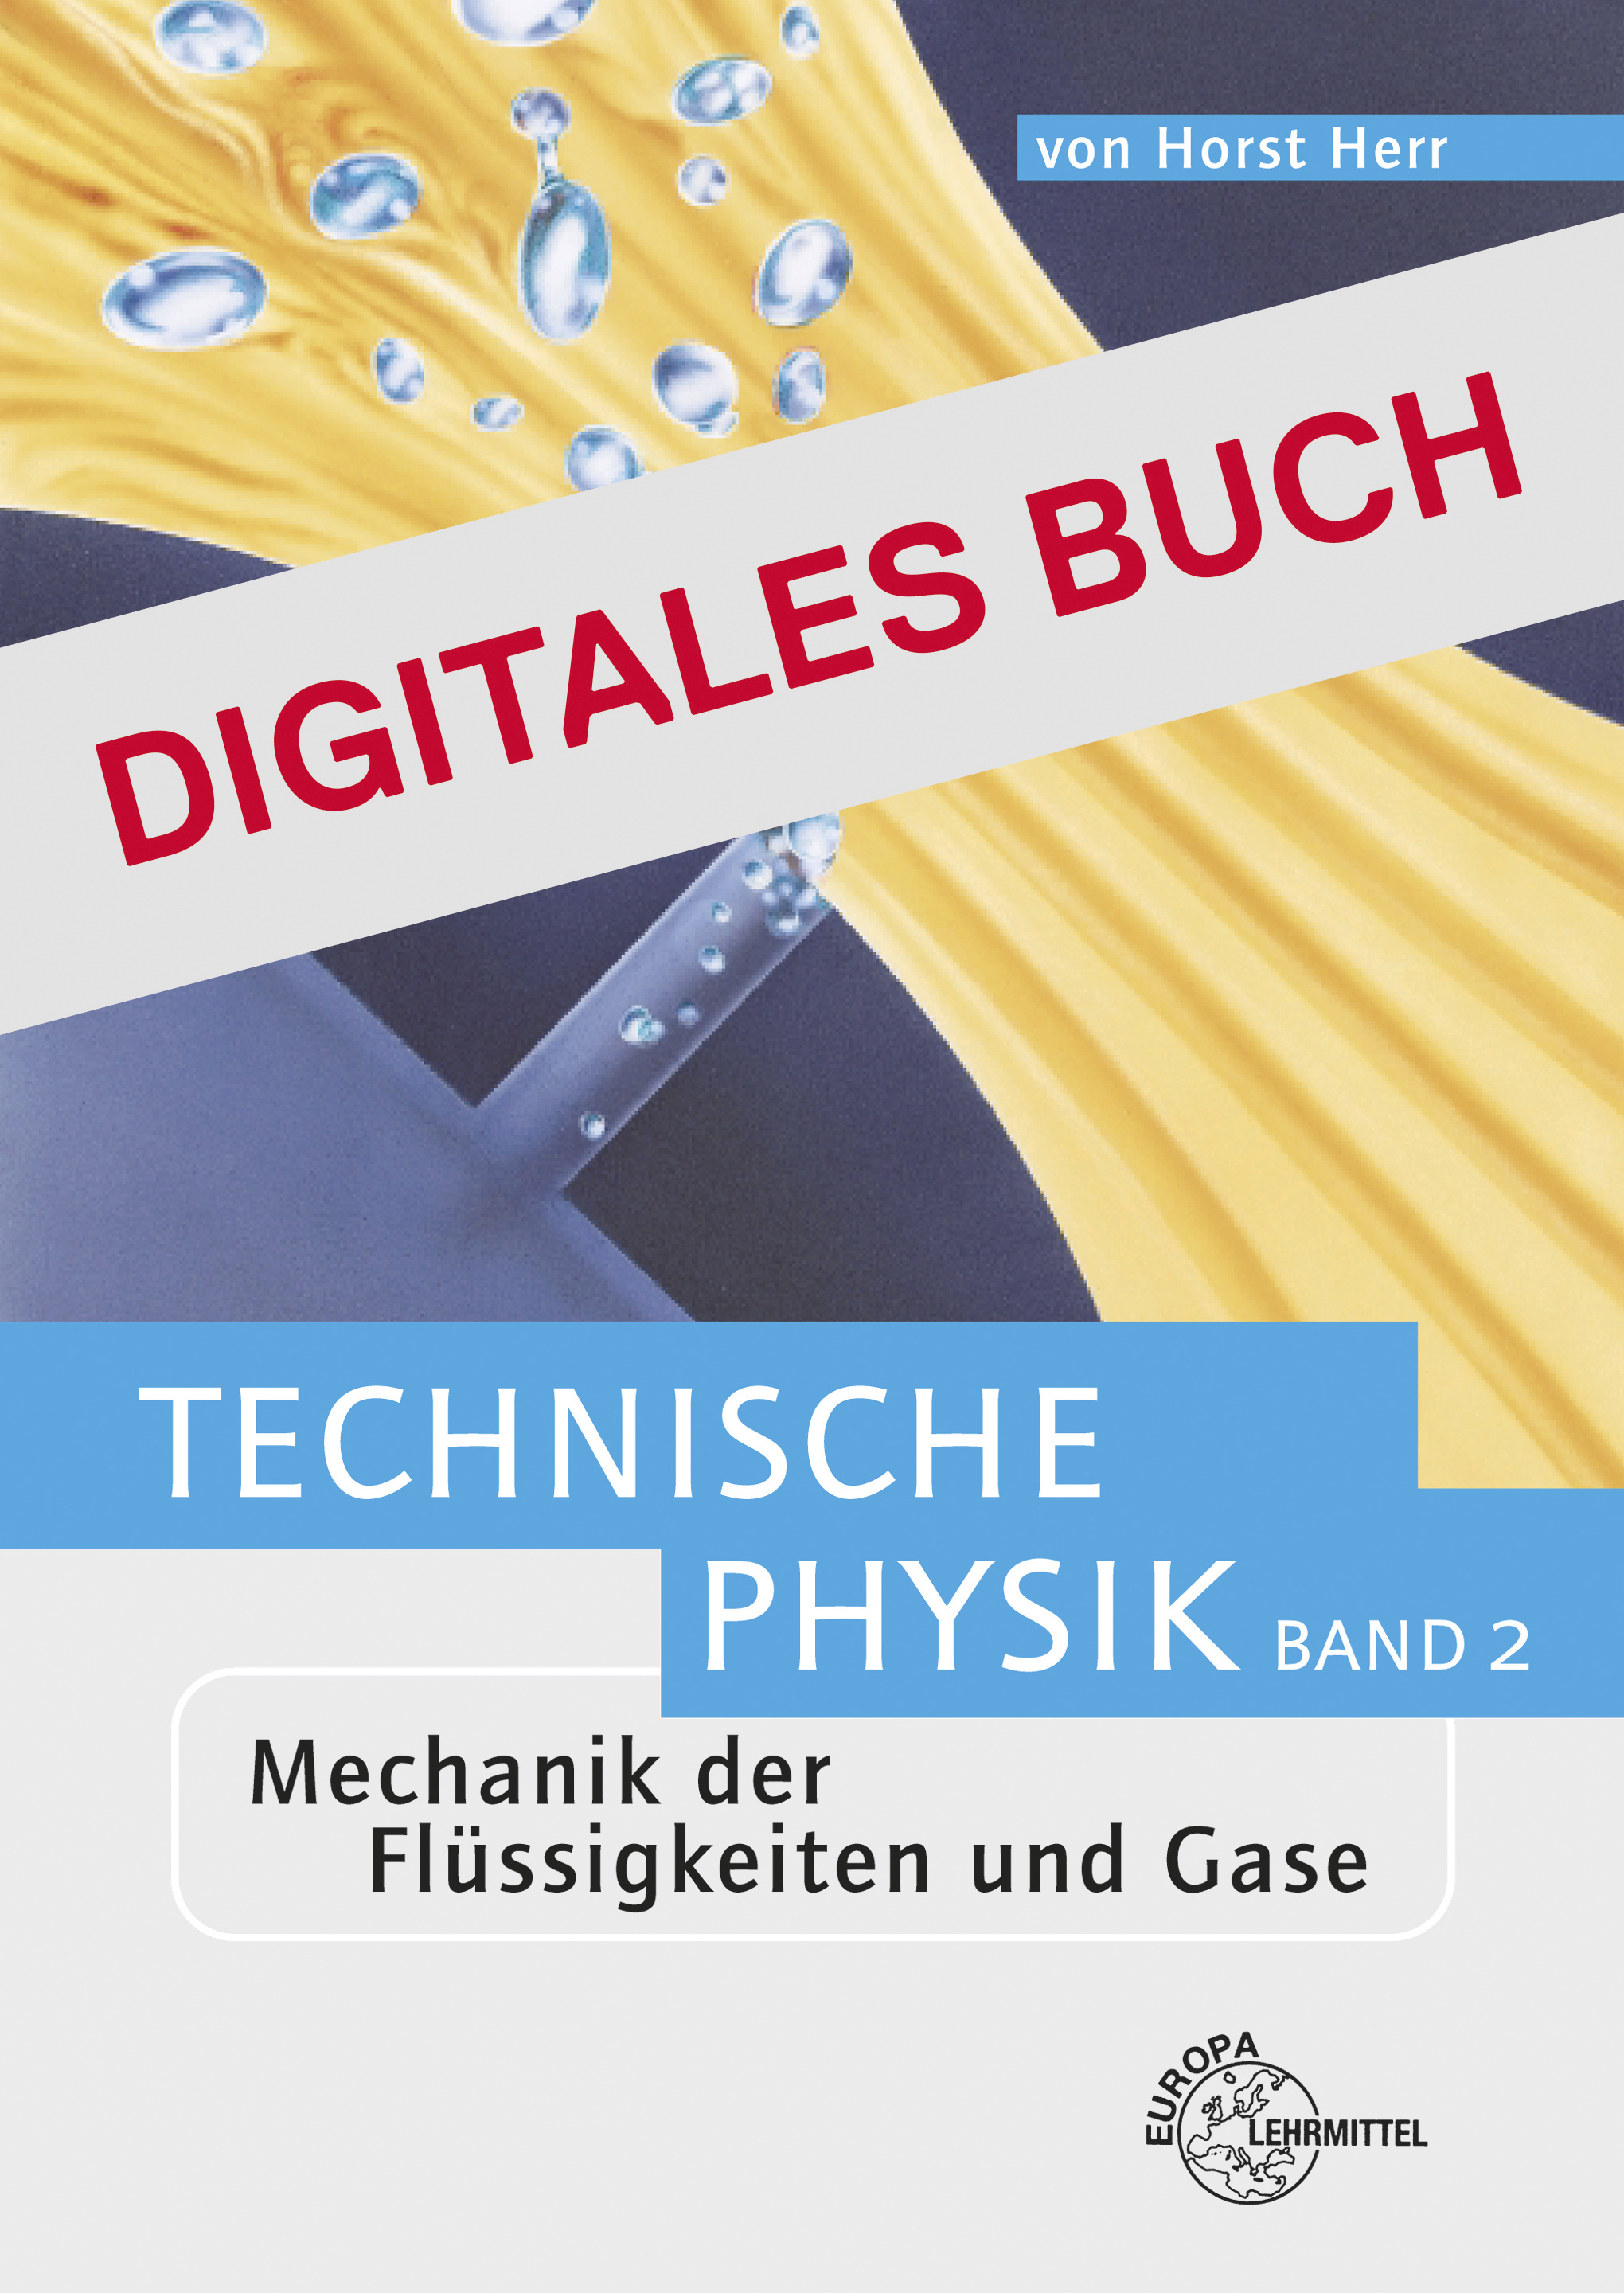 Mechanik der Flüssigkeiten und Gase - Digitales Buch